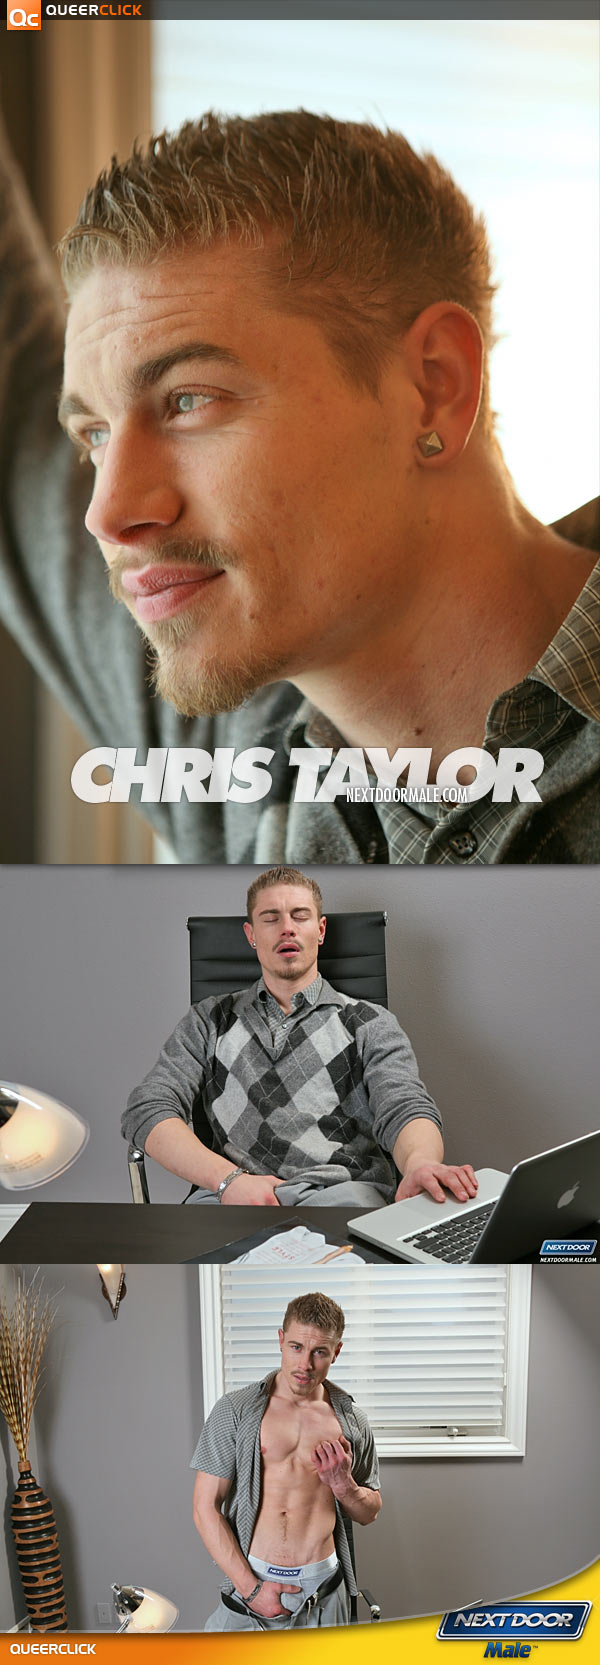 Next Door Male: Chris Taylor